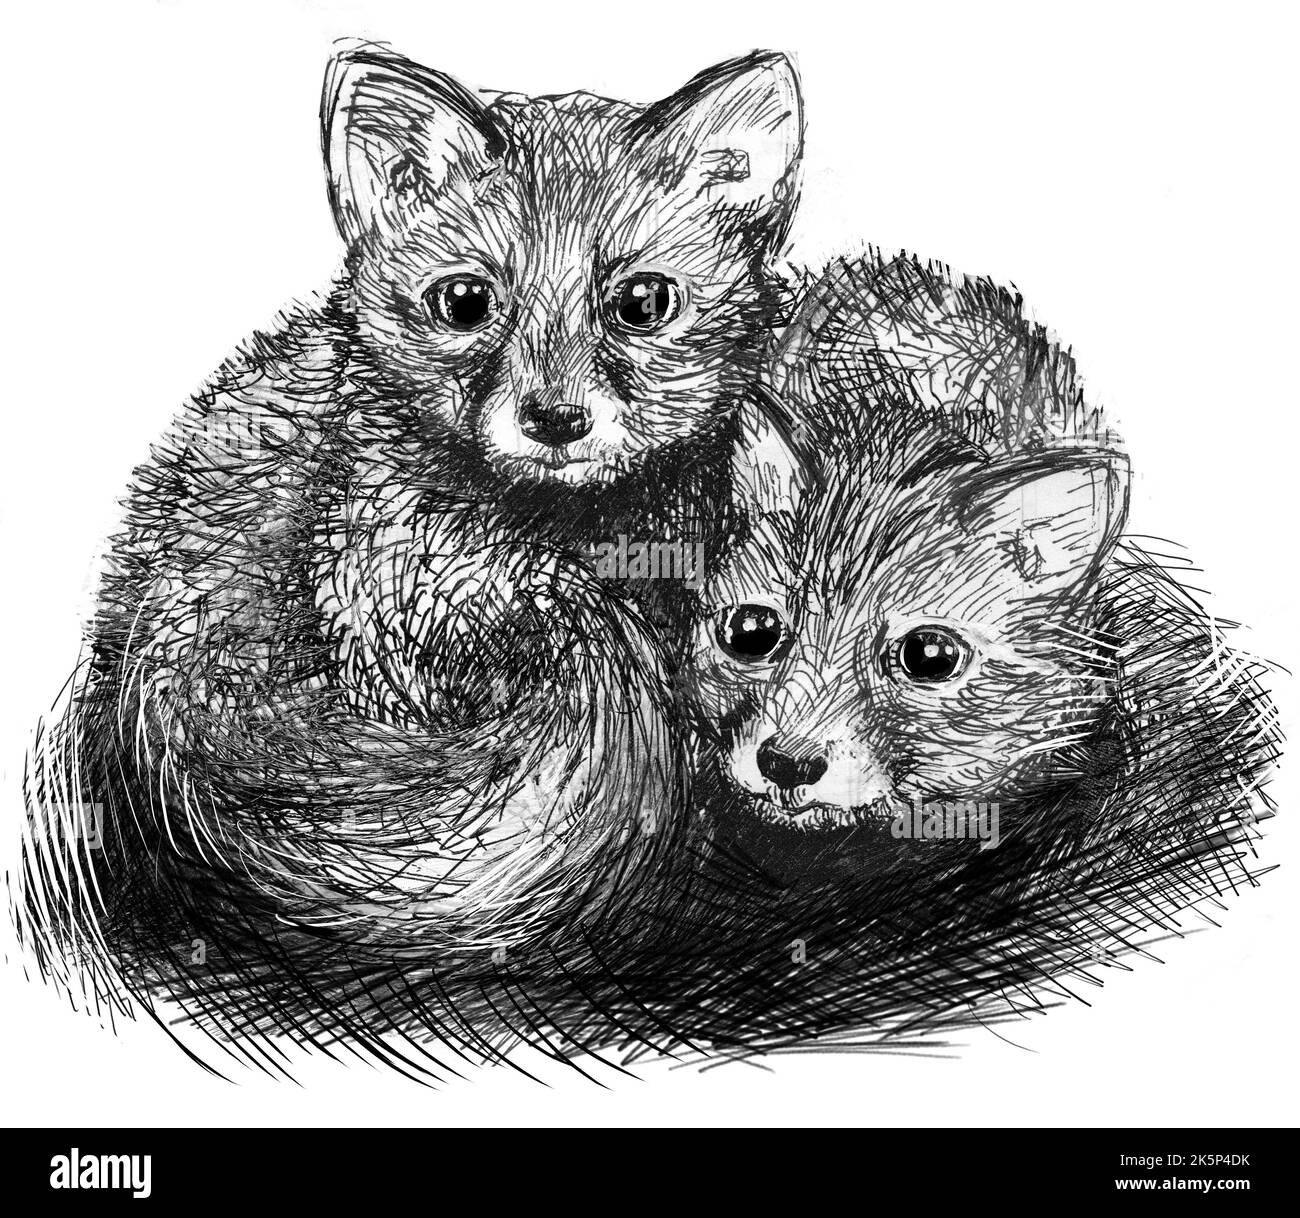 Deux mignons petits renards coudés ensemble. Dessin au stylo noir et blanc. Illustration faite à la main. Arrière-plan blanc. Banque D'Images